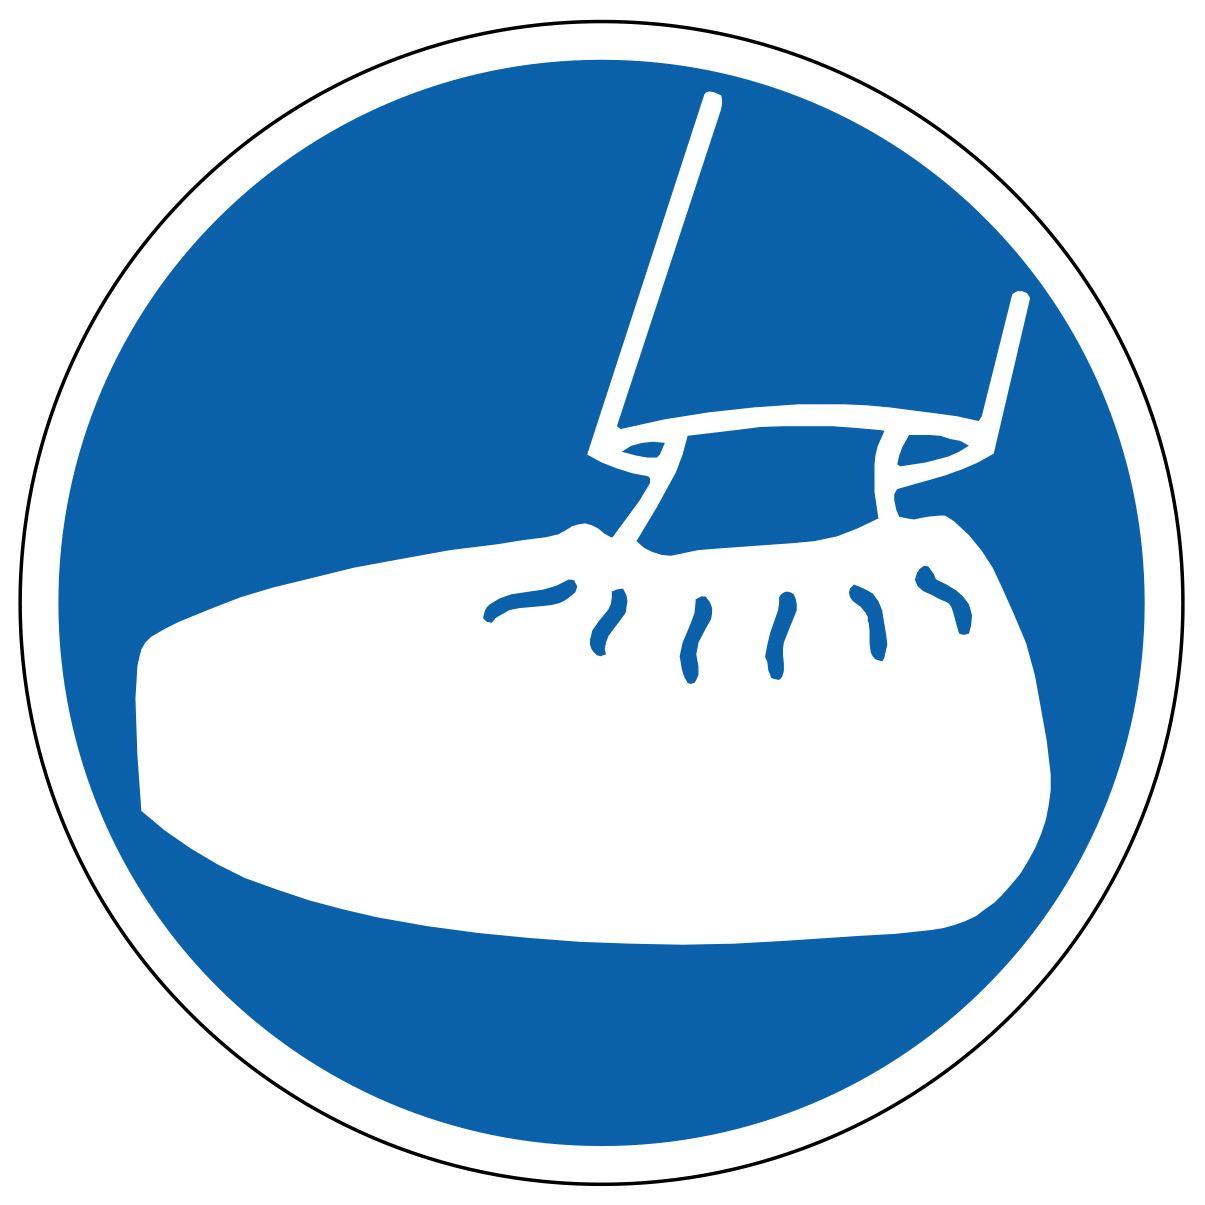 Port de surchaussures obligatoire - M214 - étiquettes et panneaux d'obligation et de consigne